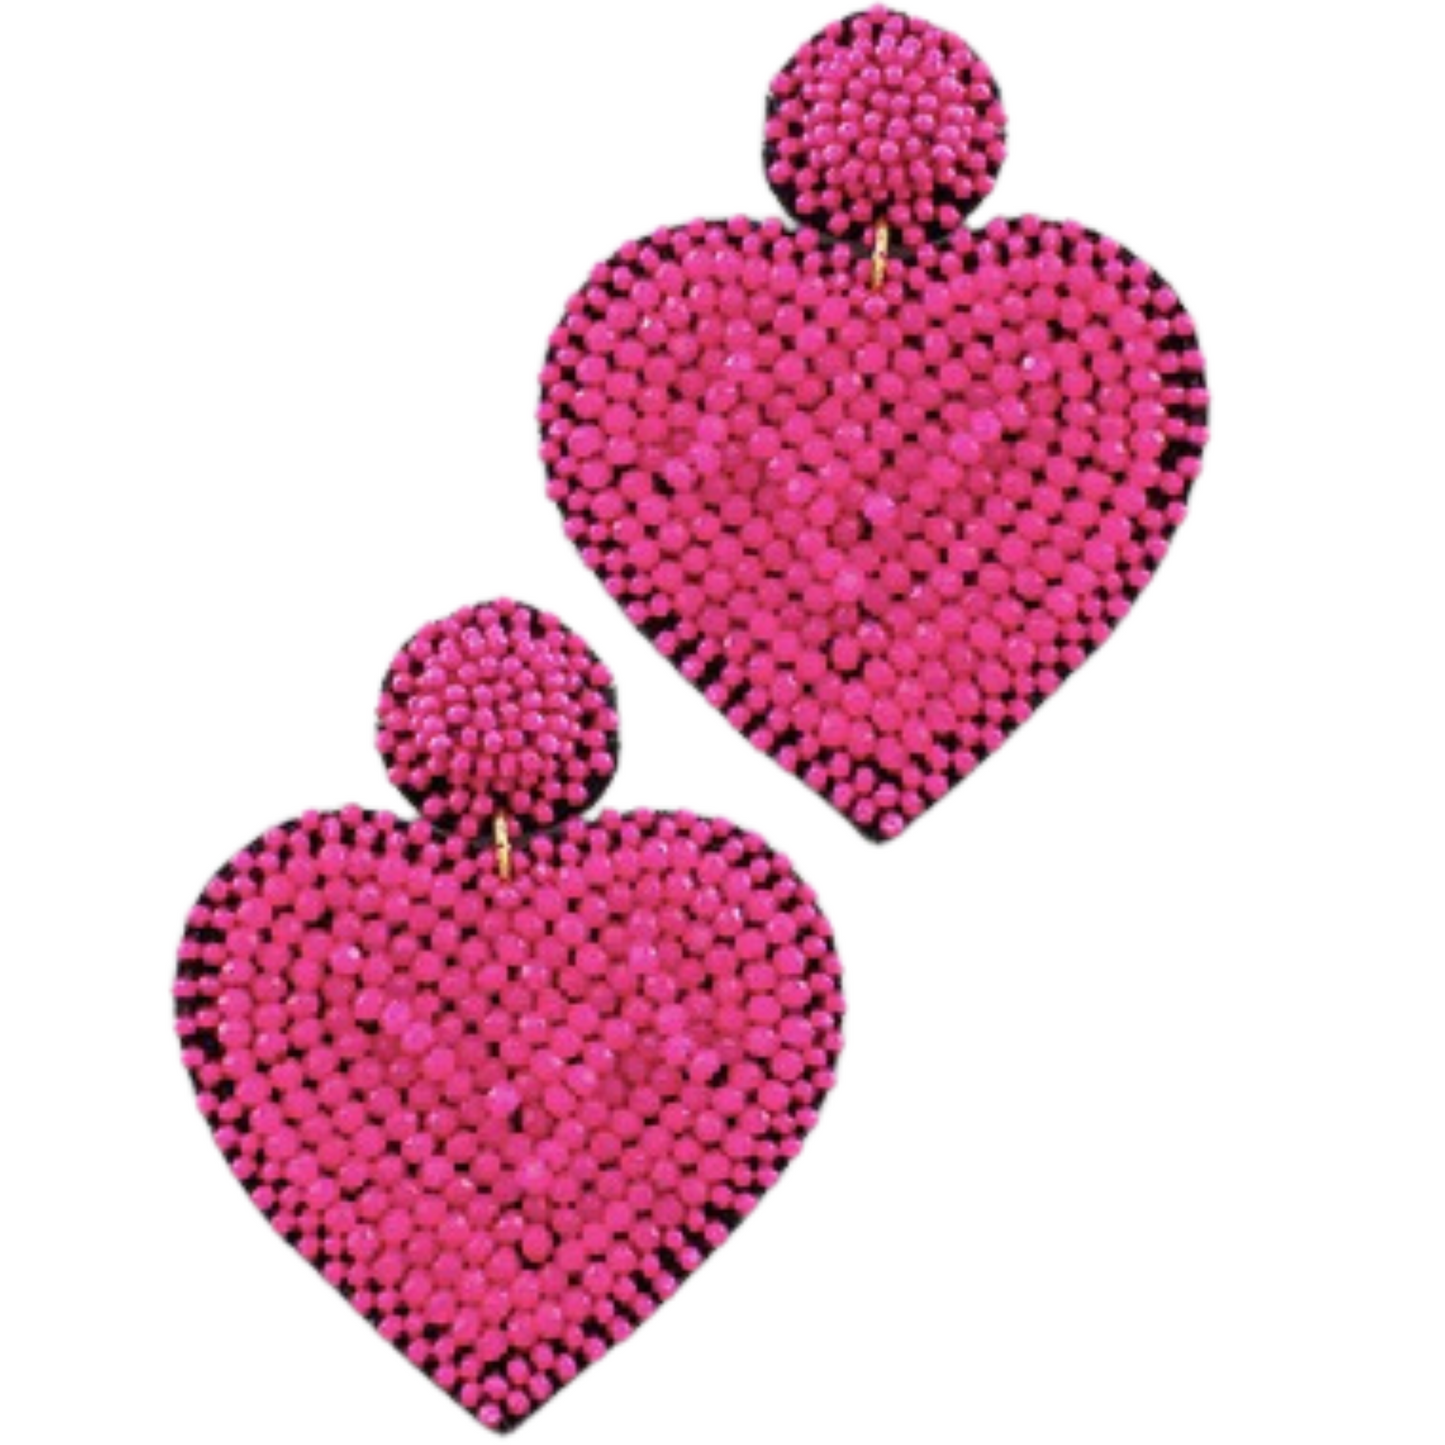 Beaded Heart dangle earrings in fuchsia